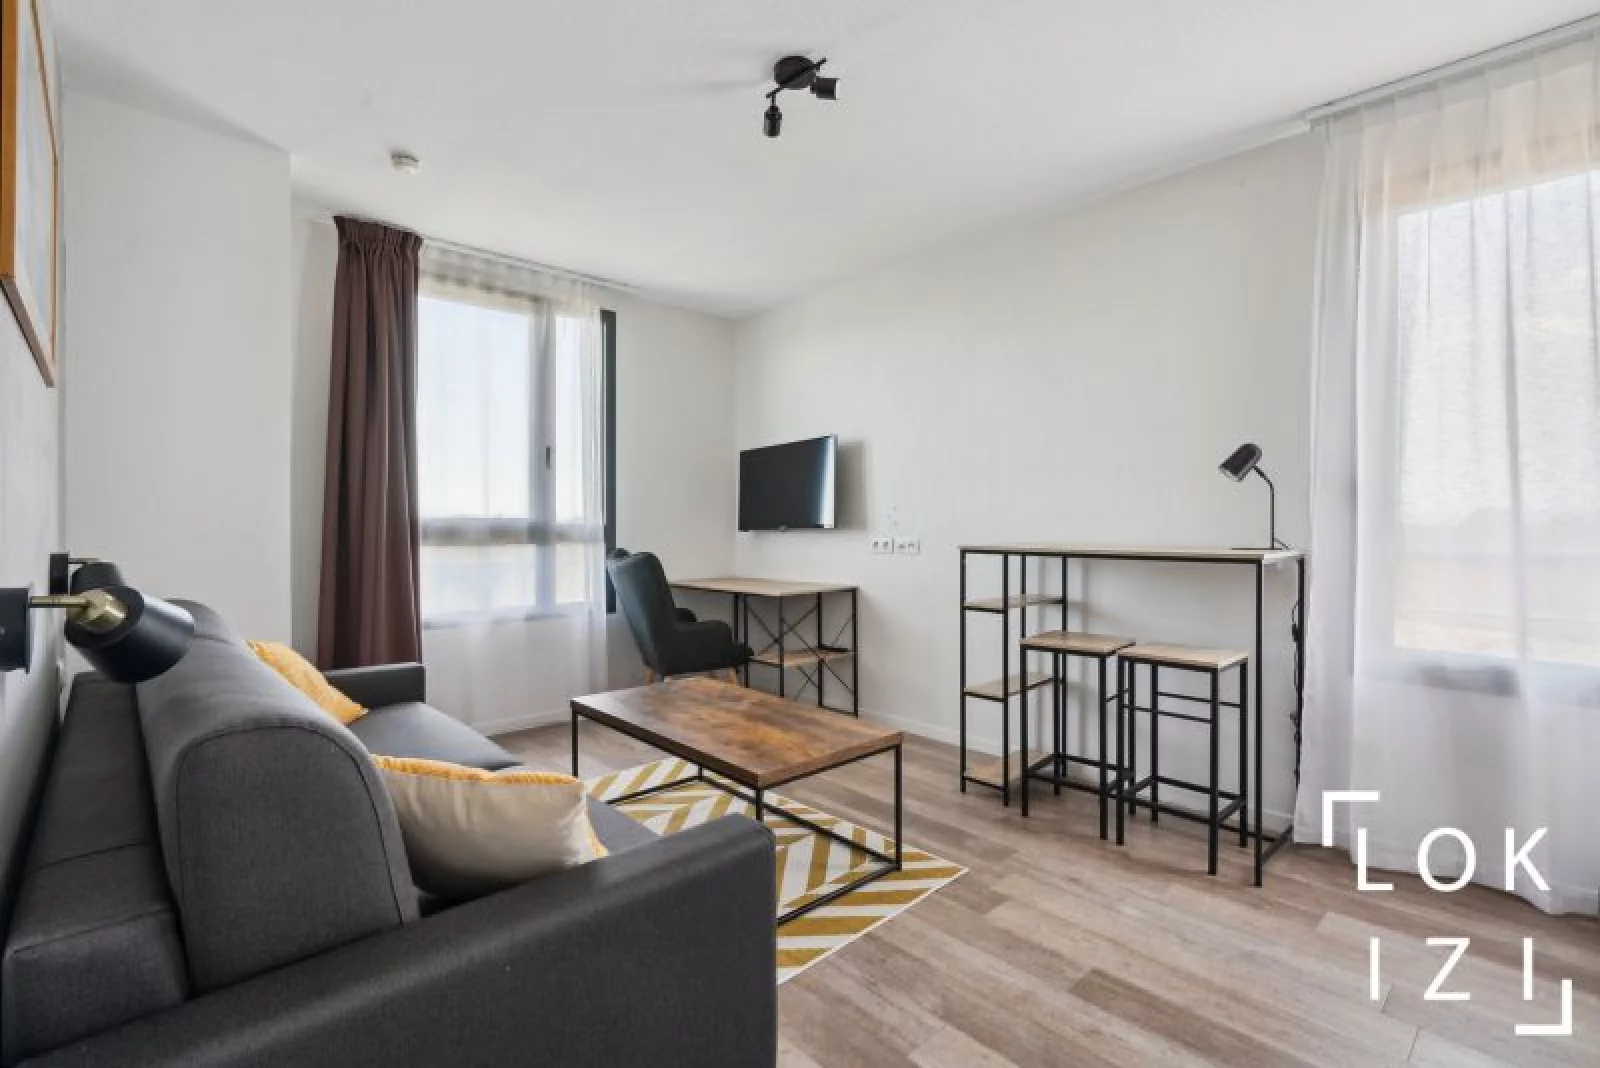 Location appartement meublé 2 pièces de 31m² (Avignon - gare TGV)